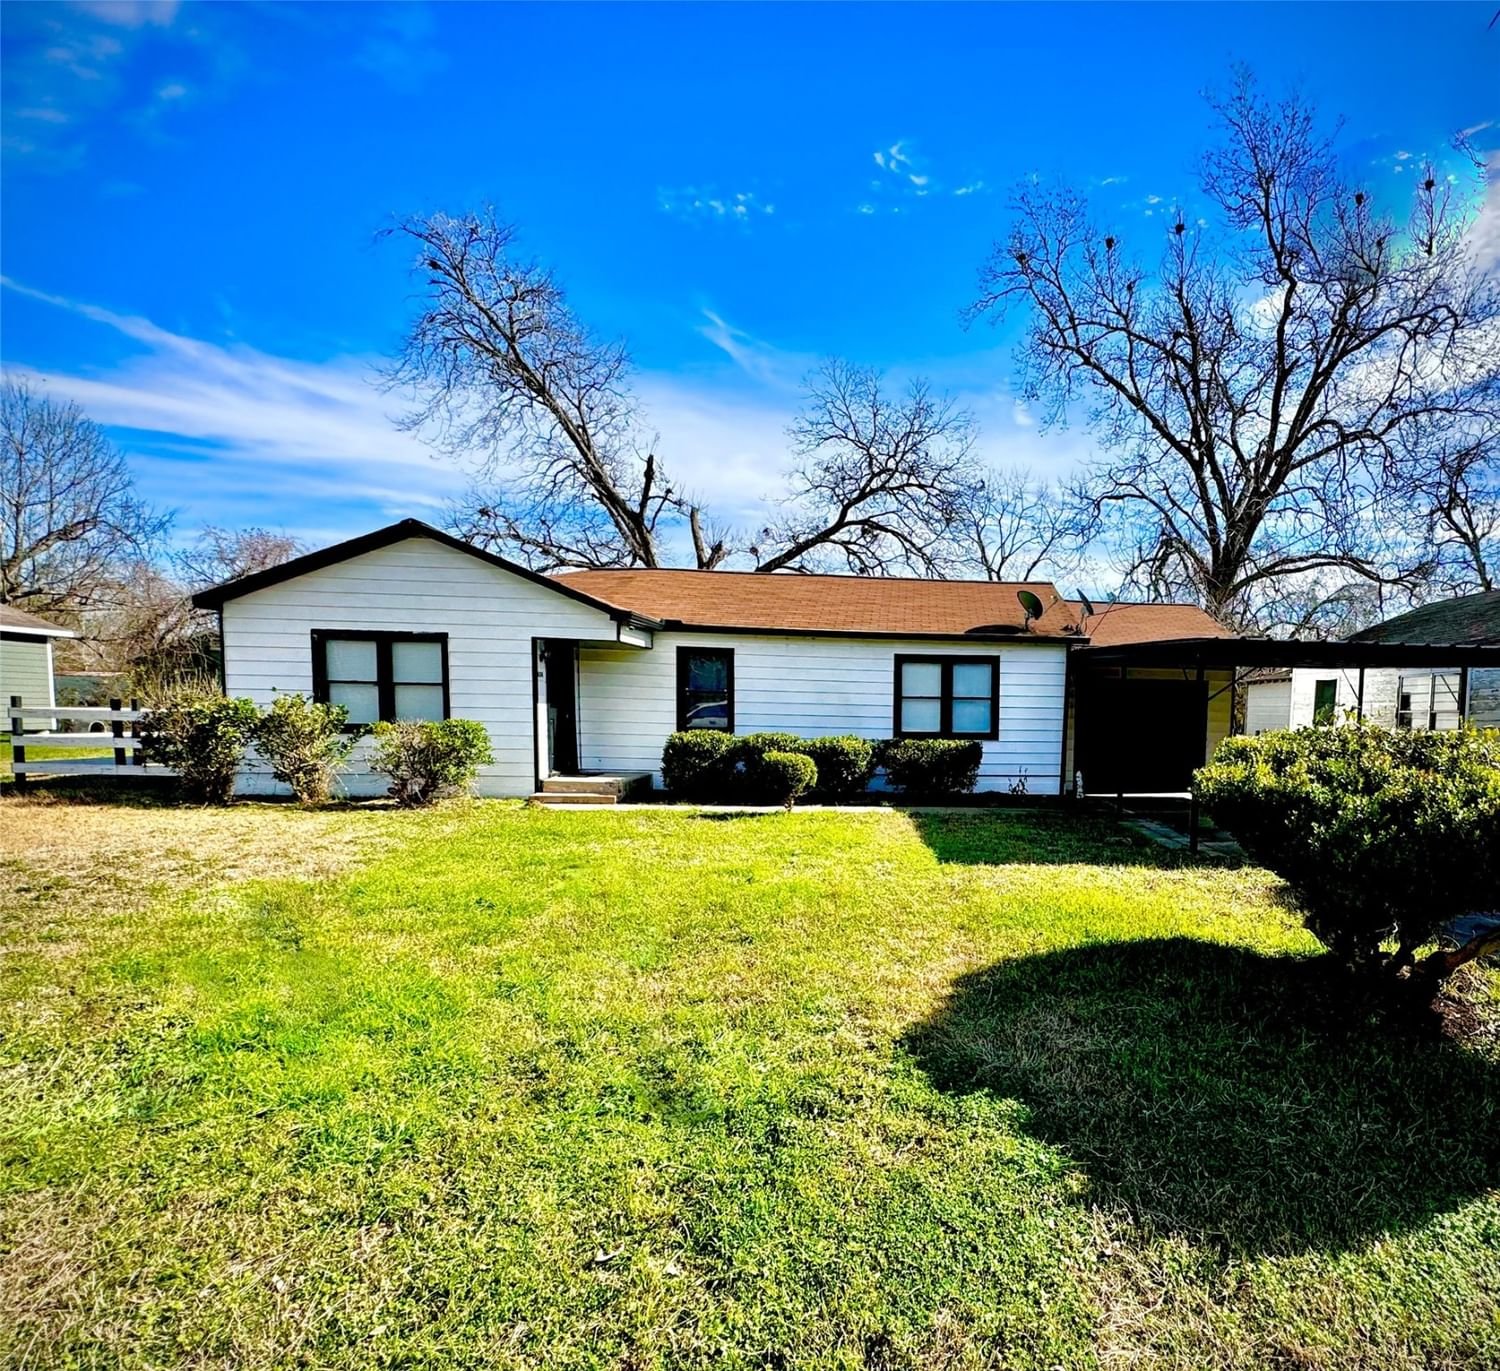 Real estate property located at 624 Branch, Wharton, Wharton A. Jackson Blk 60a, Wharton, TX, US